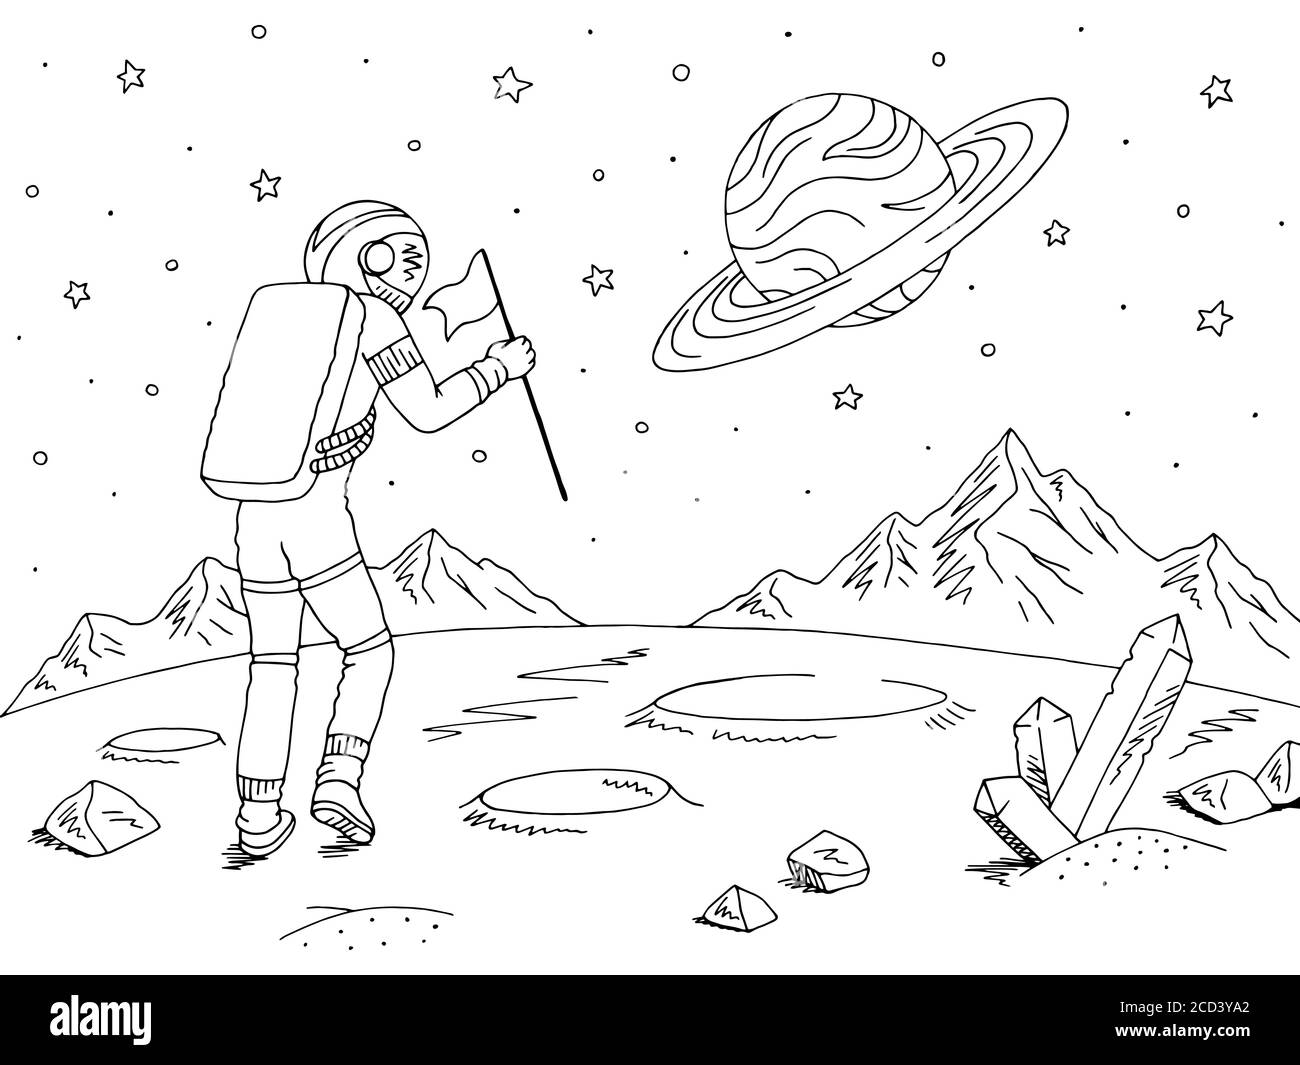 Spaceman Astronaut zu Fuß mit Flagge. Alien Planet Grafik schwarz weiß Raum Landschaft Skizze Illustration Vektor Stock Vektor